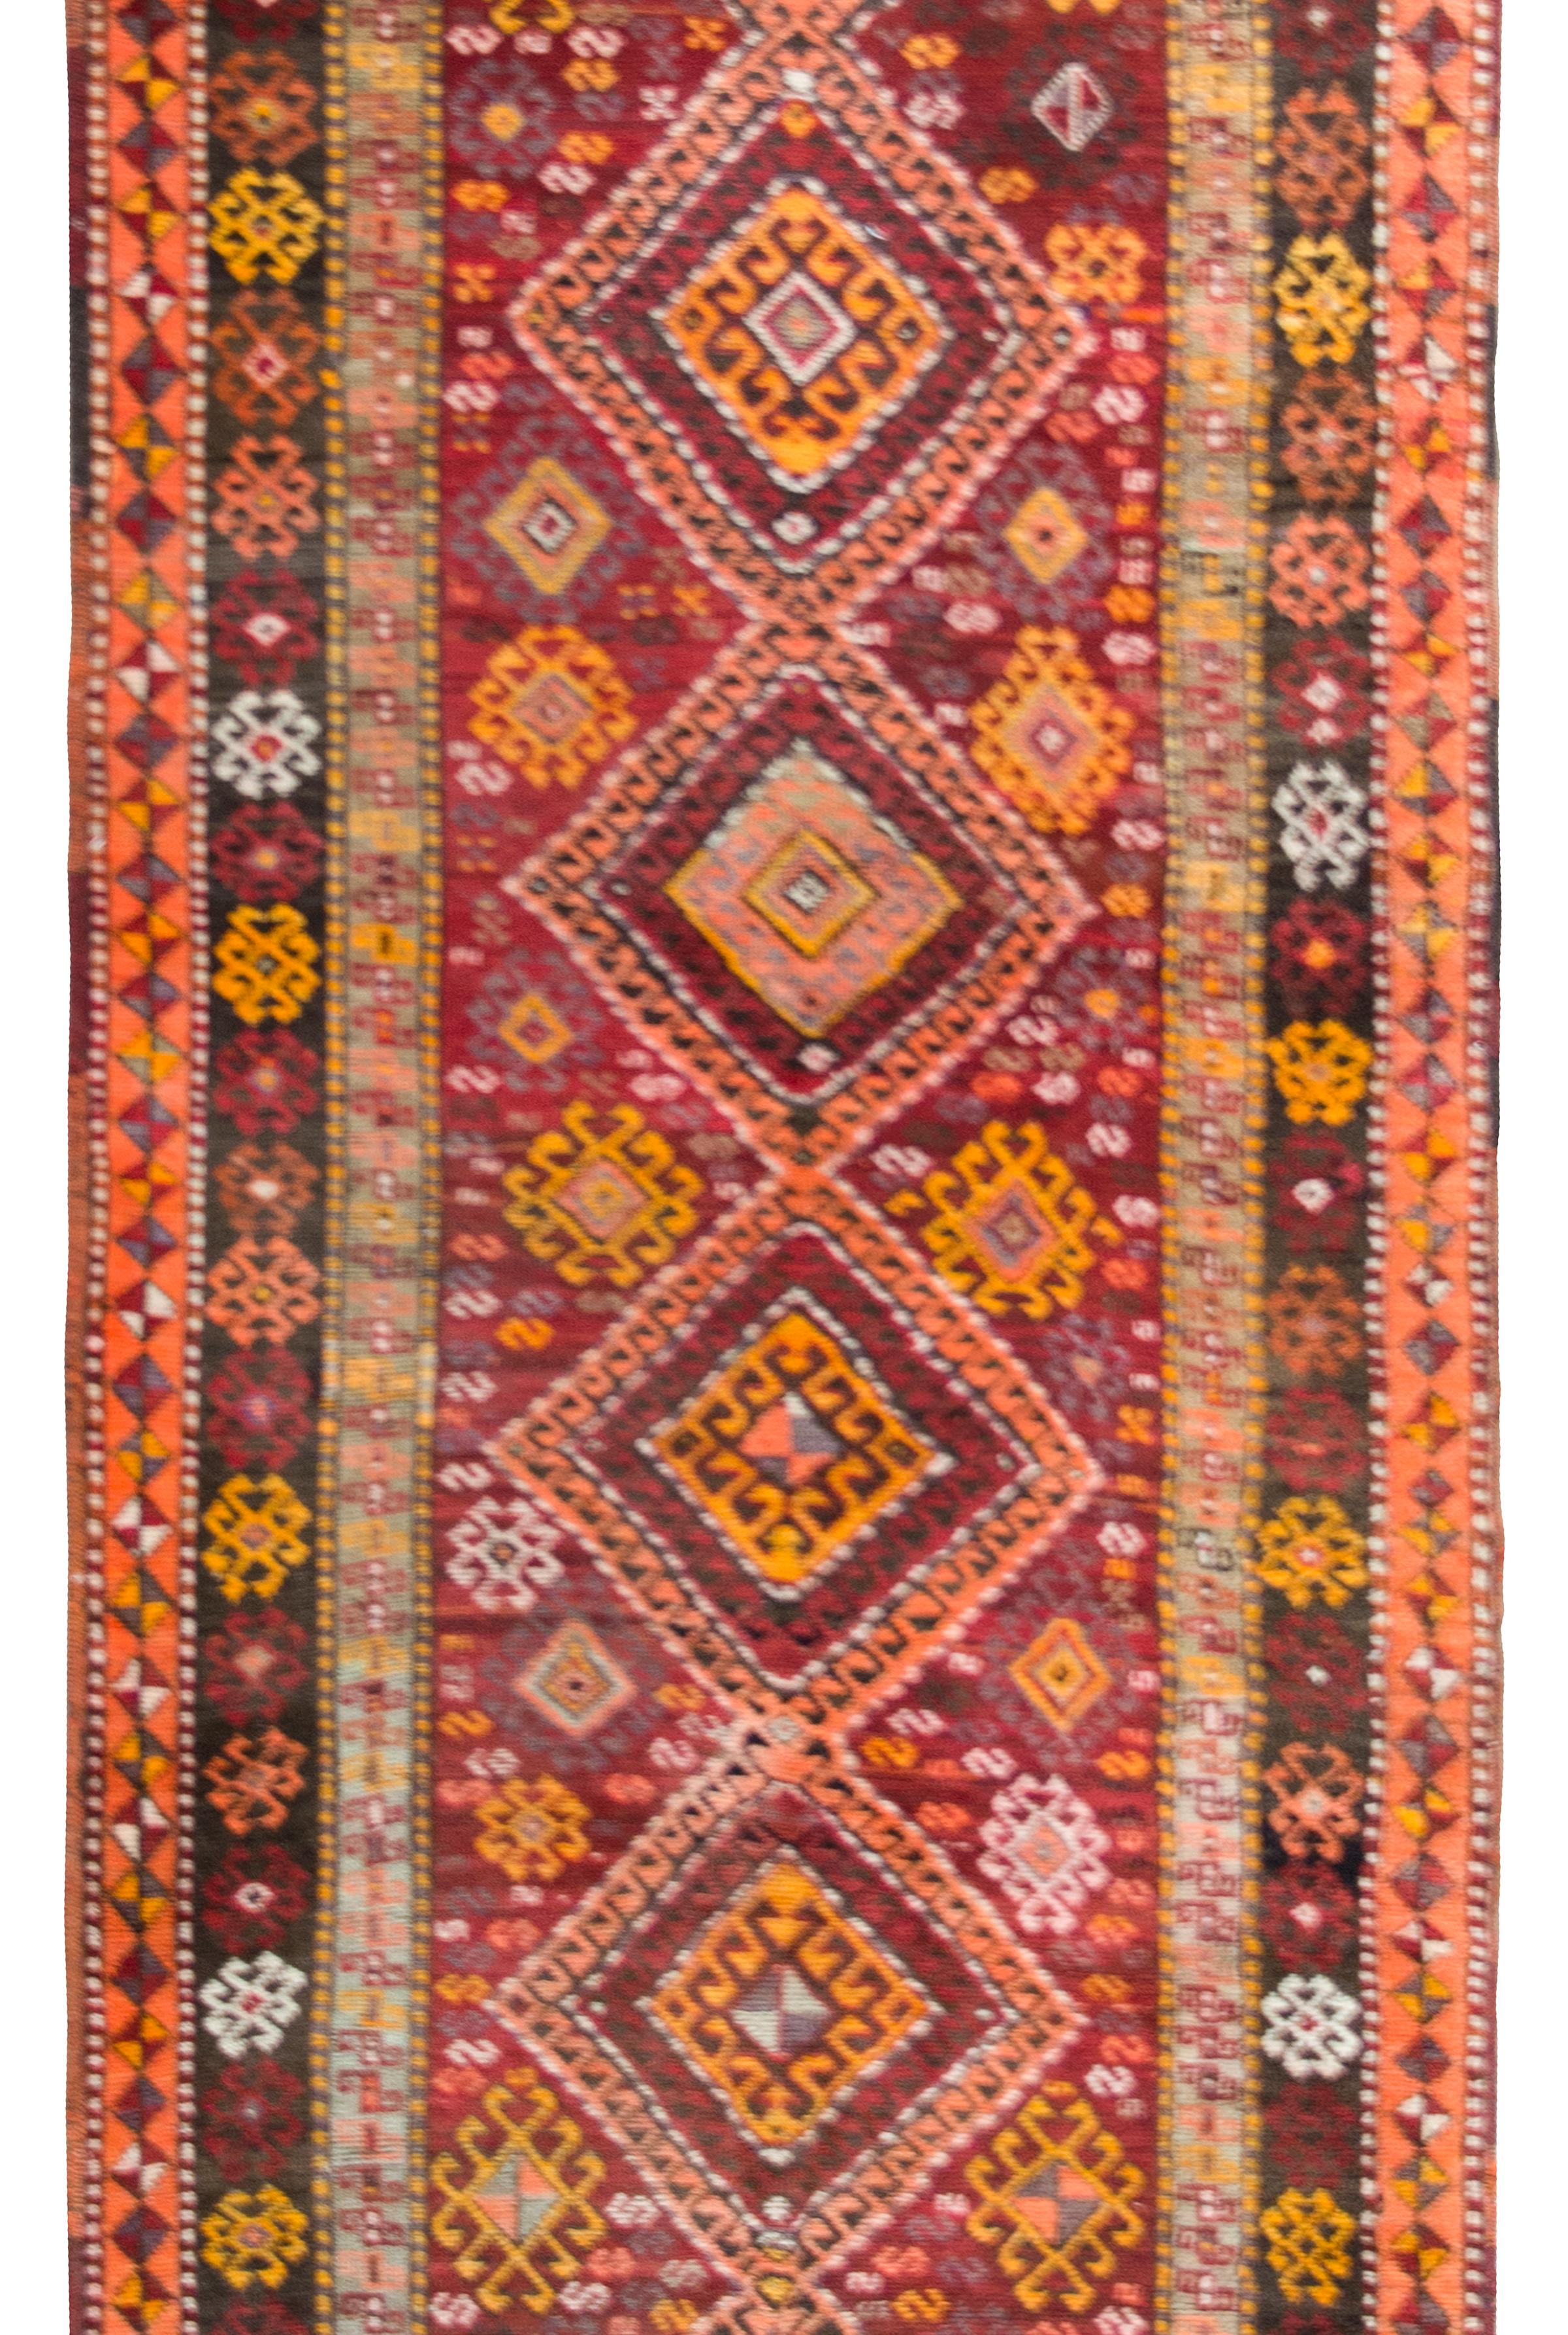 Un audacieux et brillant tapis turc de Kars du début du 20e siècle, avec plusieurs médaillons centraux en forme de diamant sur toute la longueur, entourés d'un champ de fleurs stylisées, le tout entouré d'une bordure complexe de fleurs encore plus